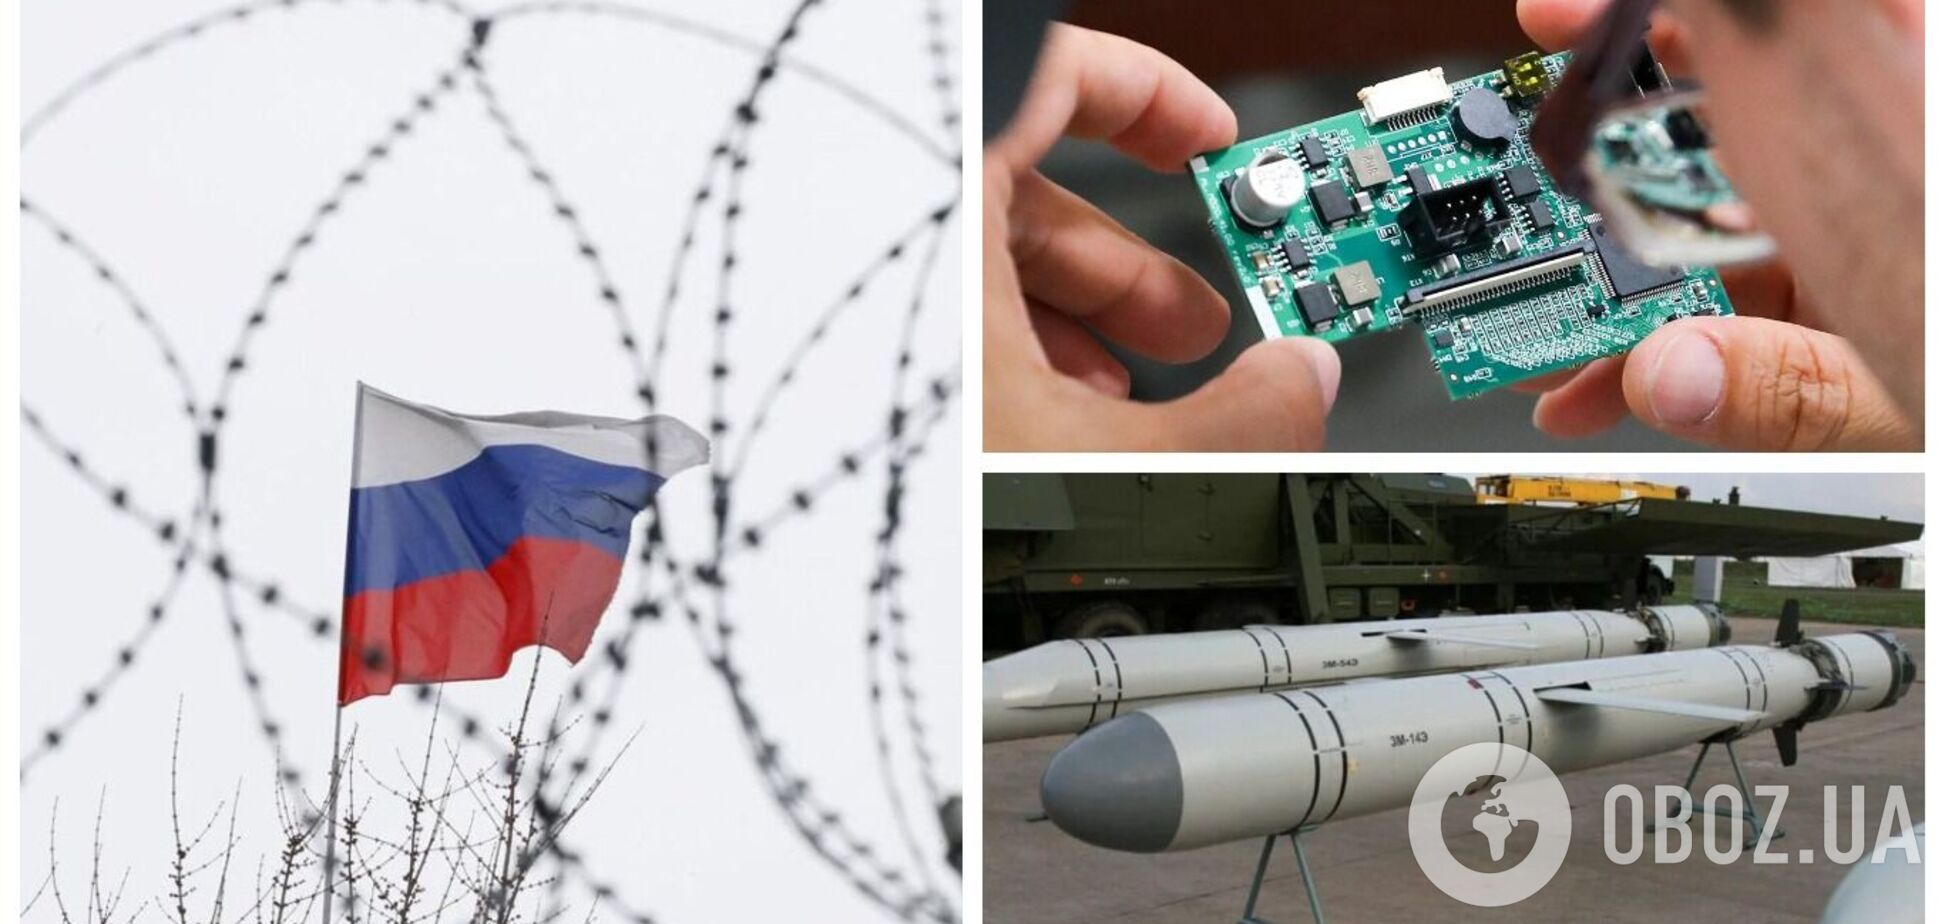 Россия импортирует западные технологии для оружия через другие страны: в NYT назвали государства, вовлеченные в схему